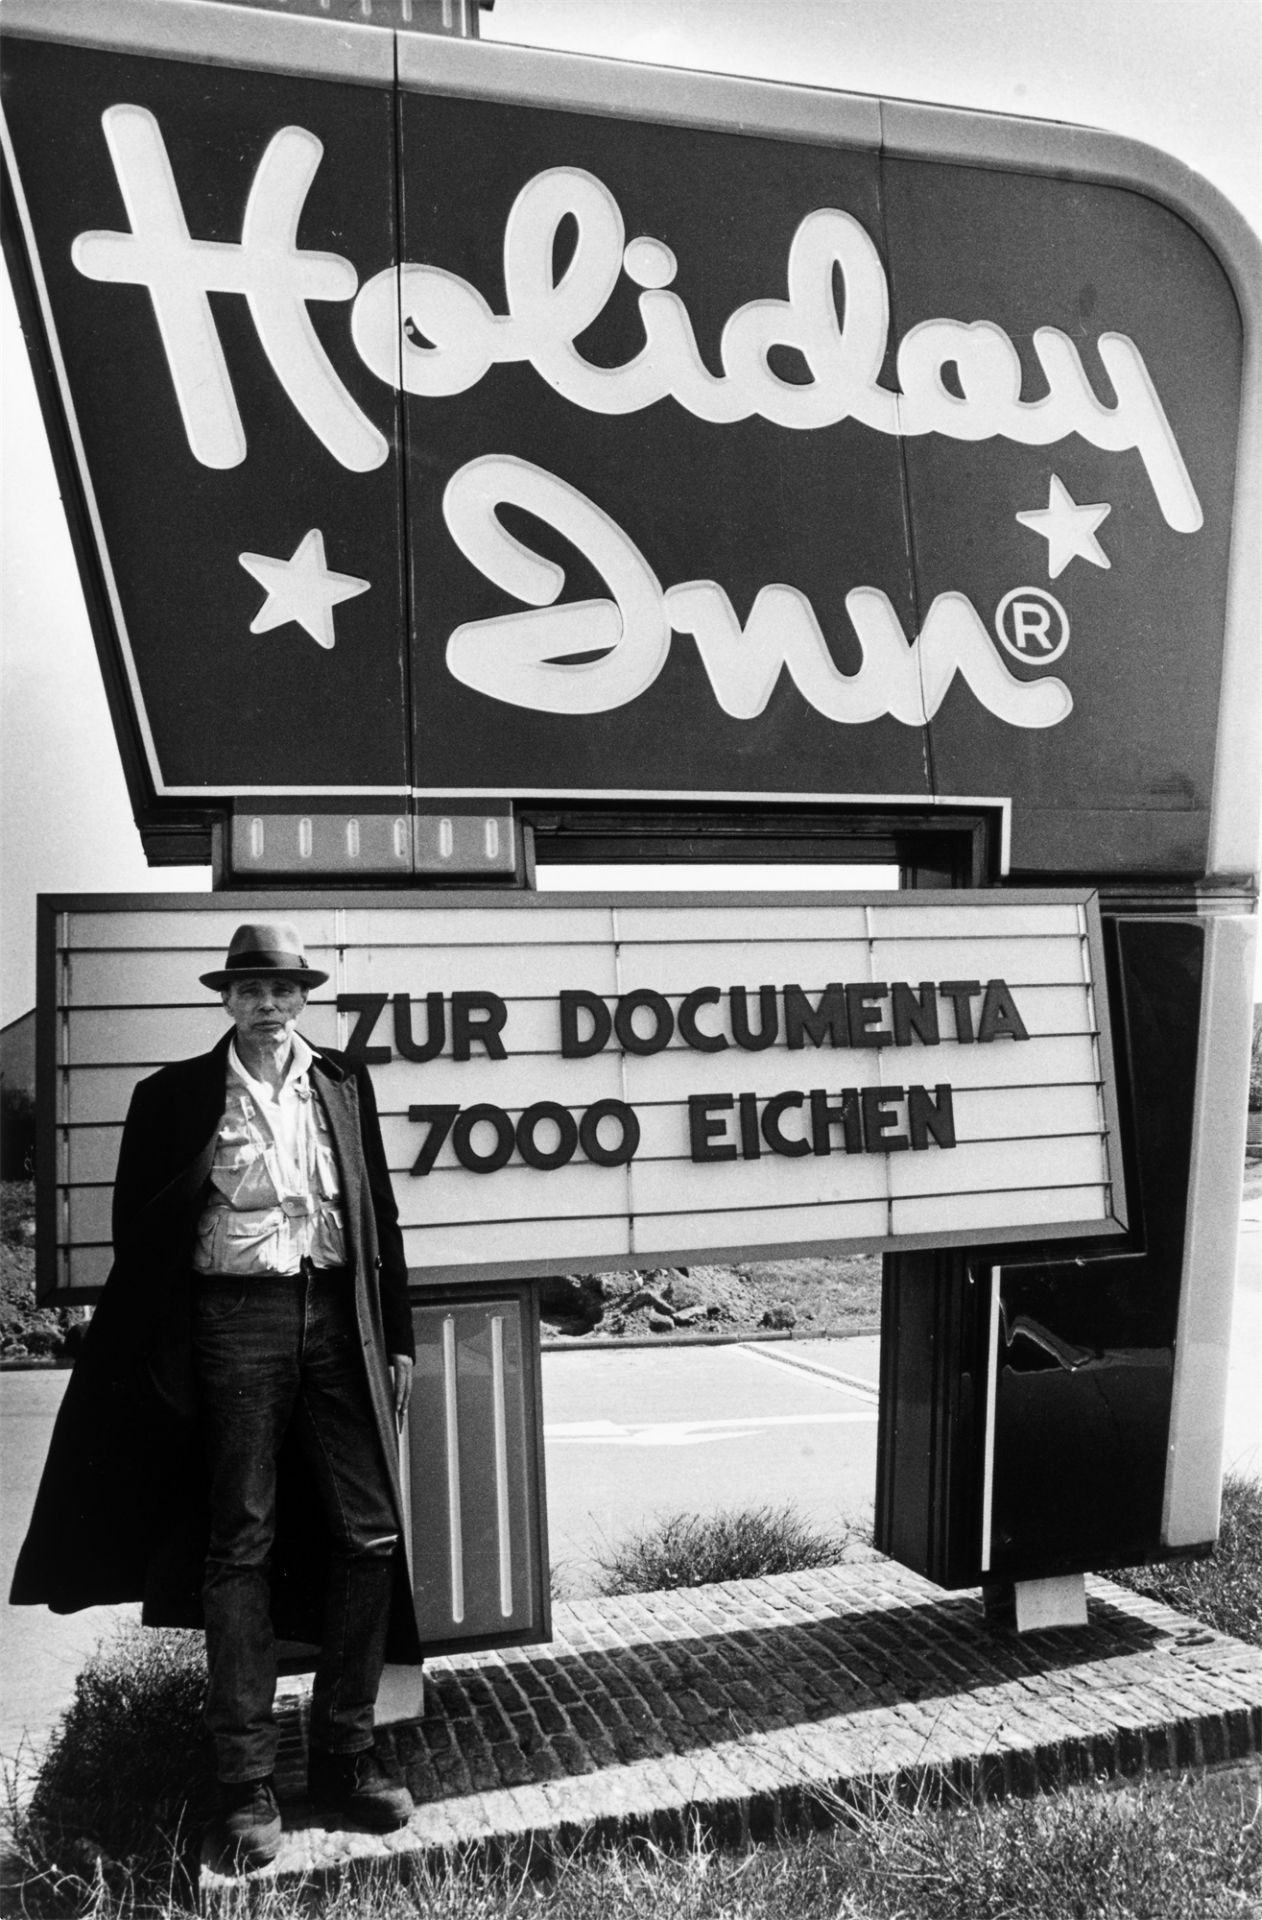 Dieter Schwerdtle. Joseph Beuys – Aktion 7000 Eichen für die documenta 7 in Kassel. 1982